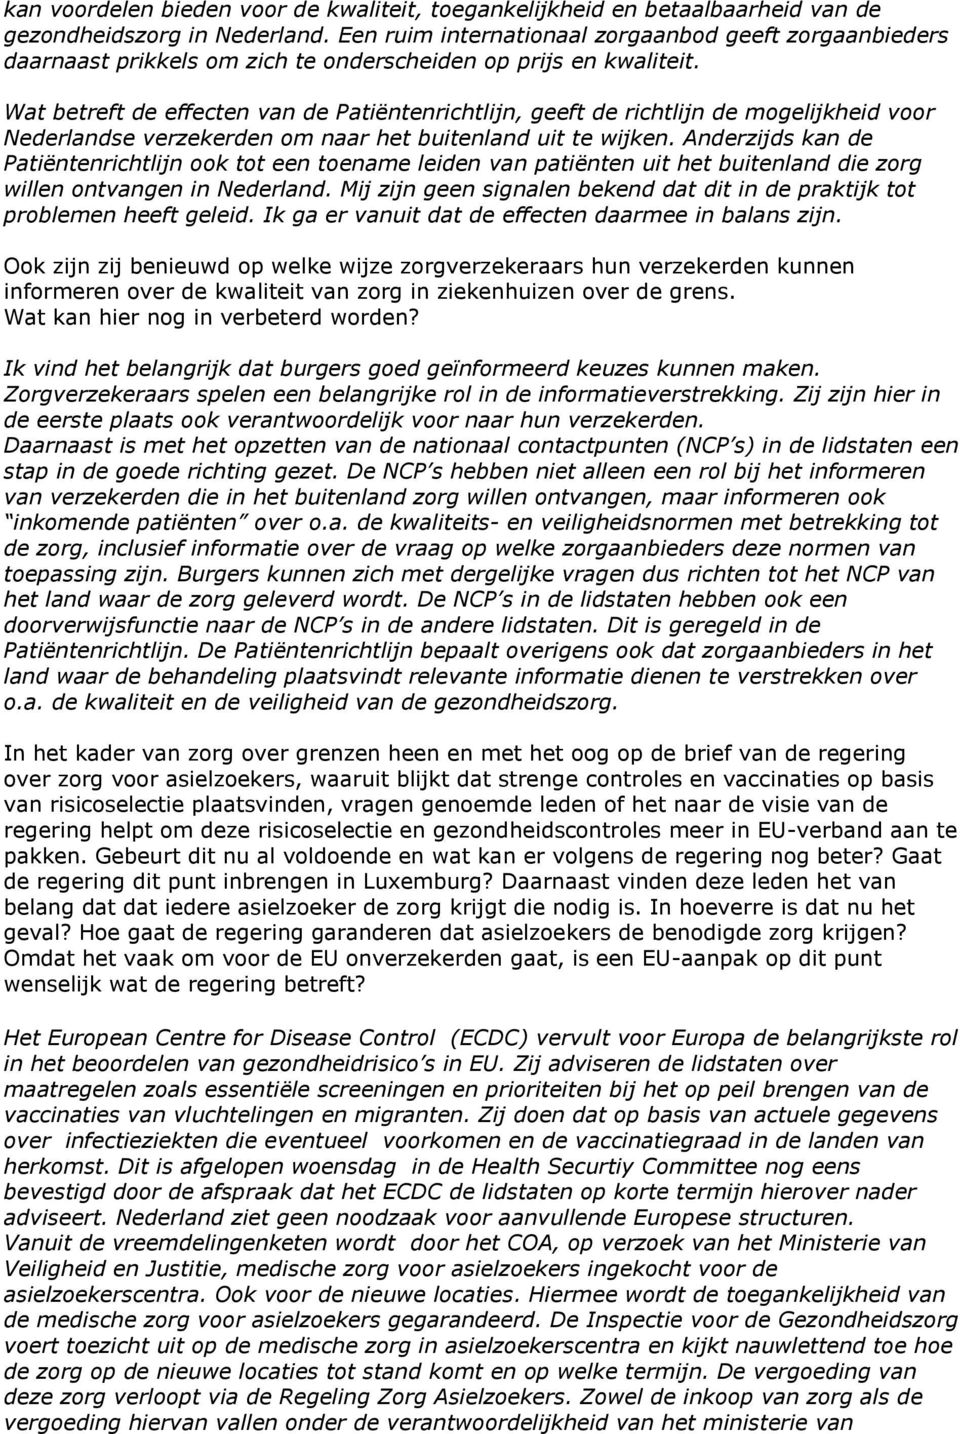 Wat betreft de effecten van de Patiëntenrichtlijn, geeft de richtlijn de mogelijkheid voor Nederlandse verzekerden om naar het buitenland uit te wijken.